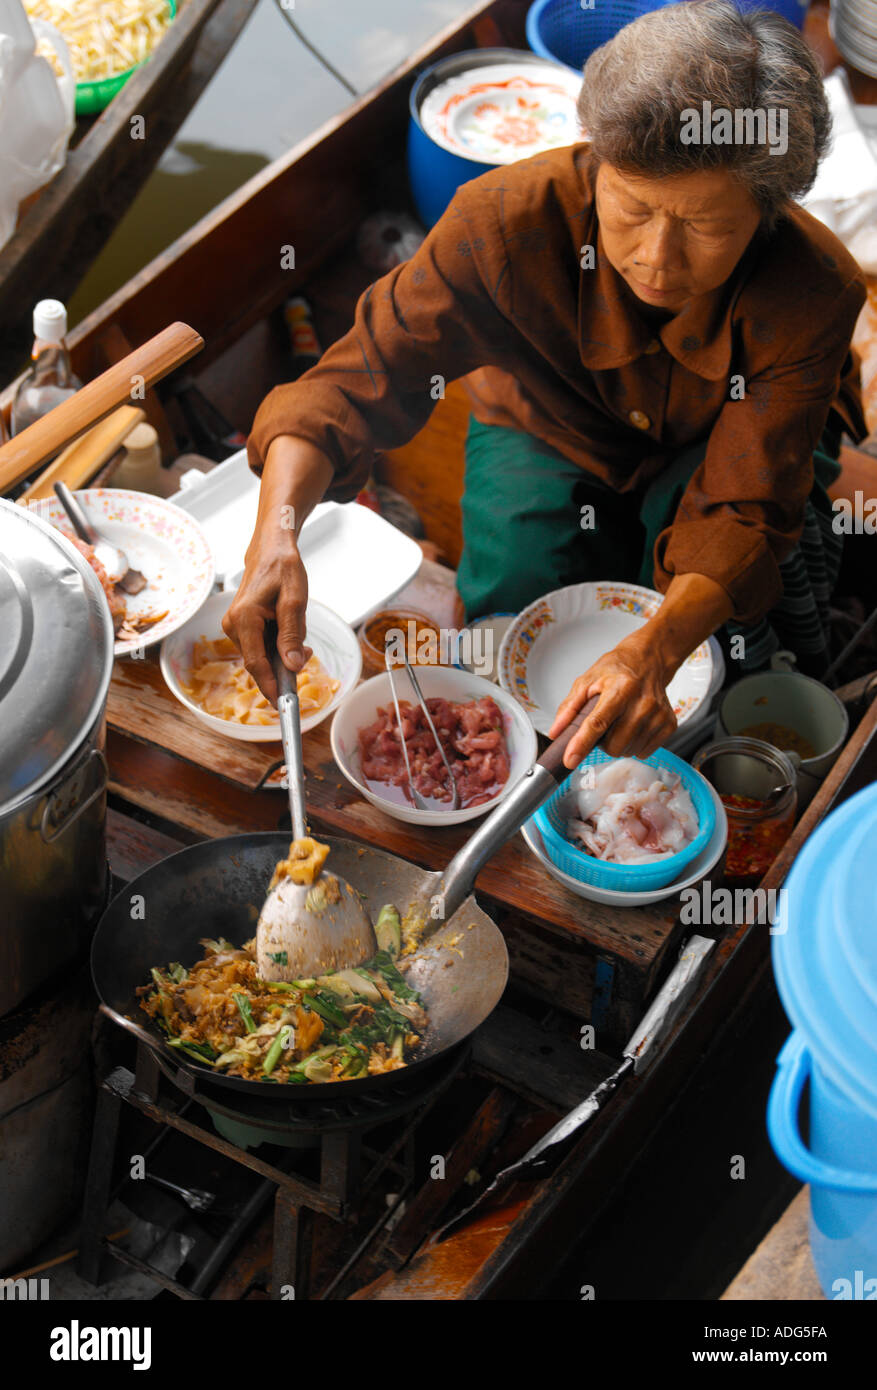 Femme thaïlandaise prépare la nourriture sur un sampan au marché flottant de Damnoen Saduak près de Bangkok en Thaïlande Banque D'Images